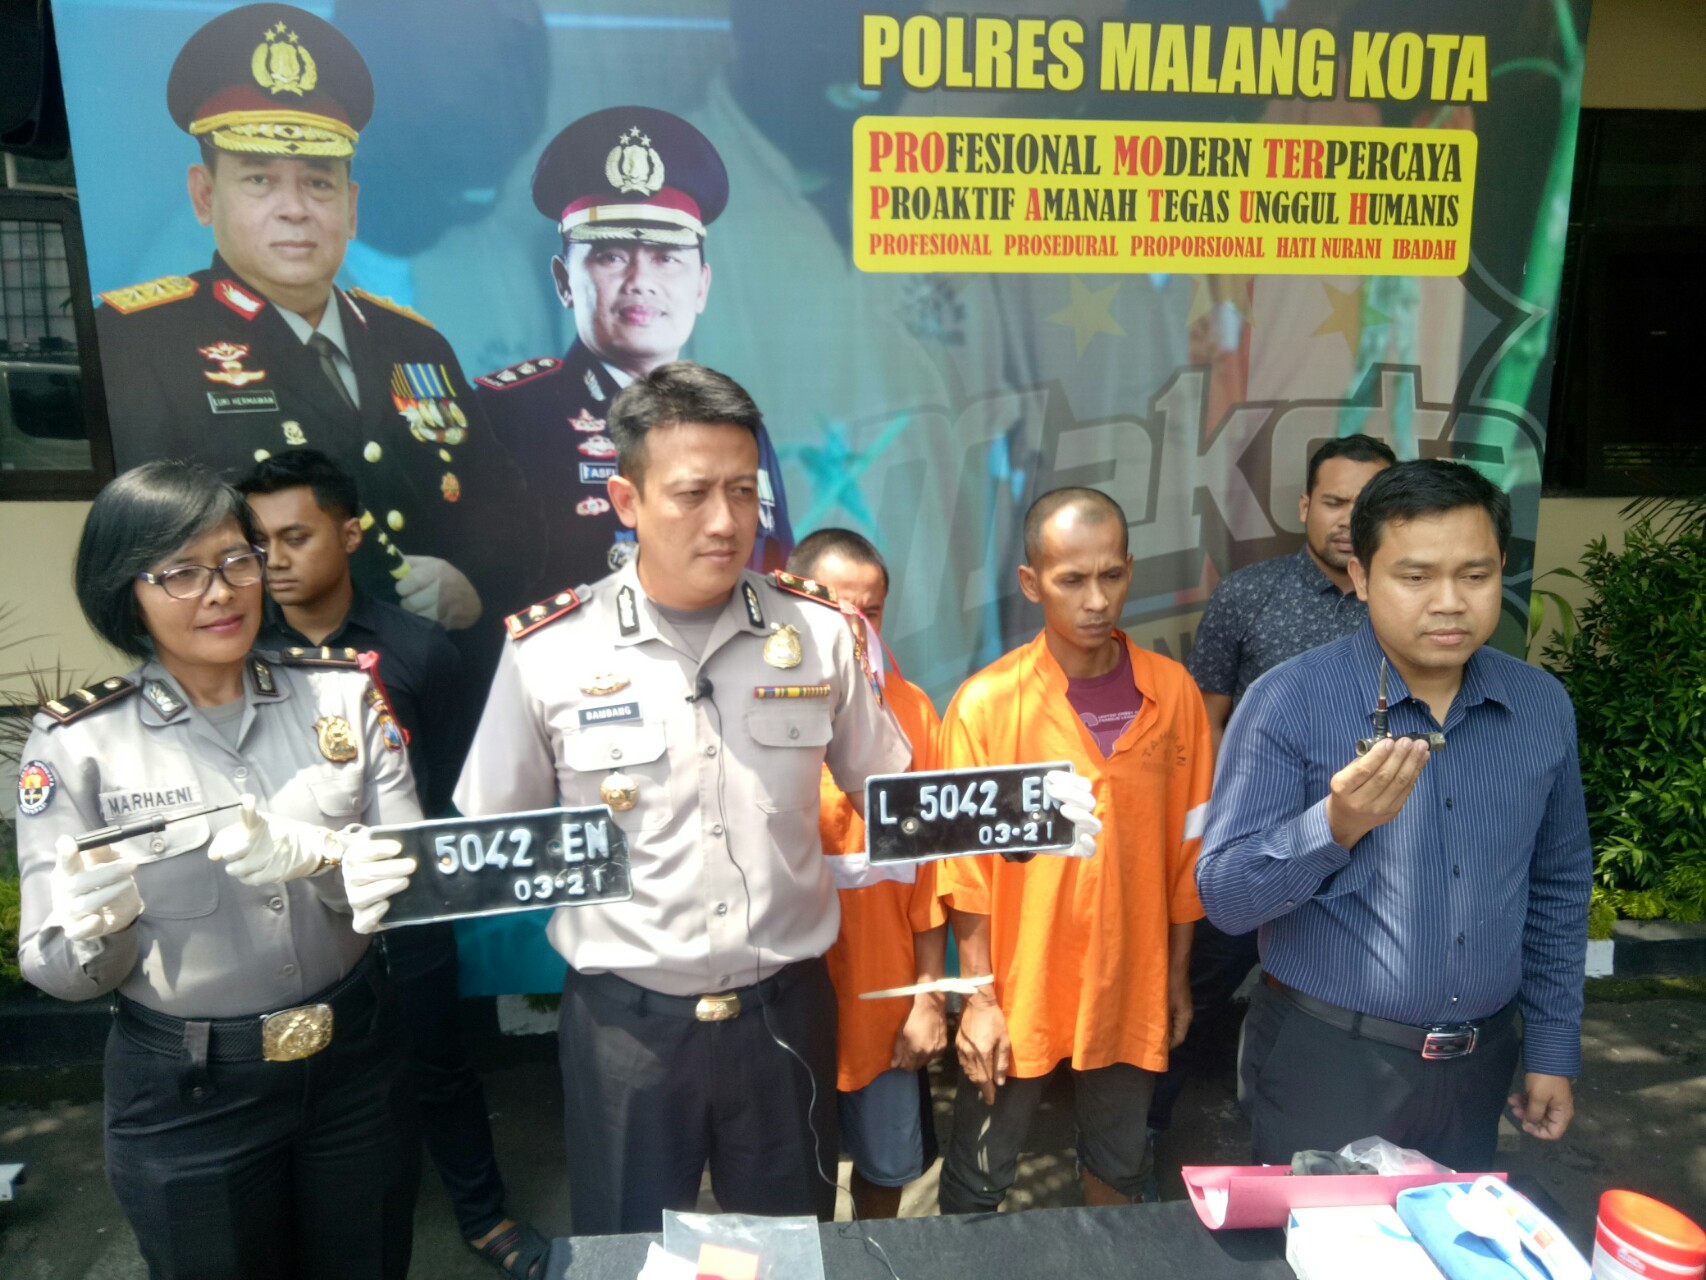 Gelar perkara kasus pencuriam motor di Polres Malang Kota.